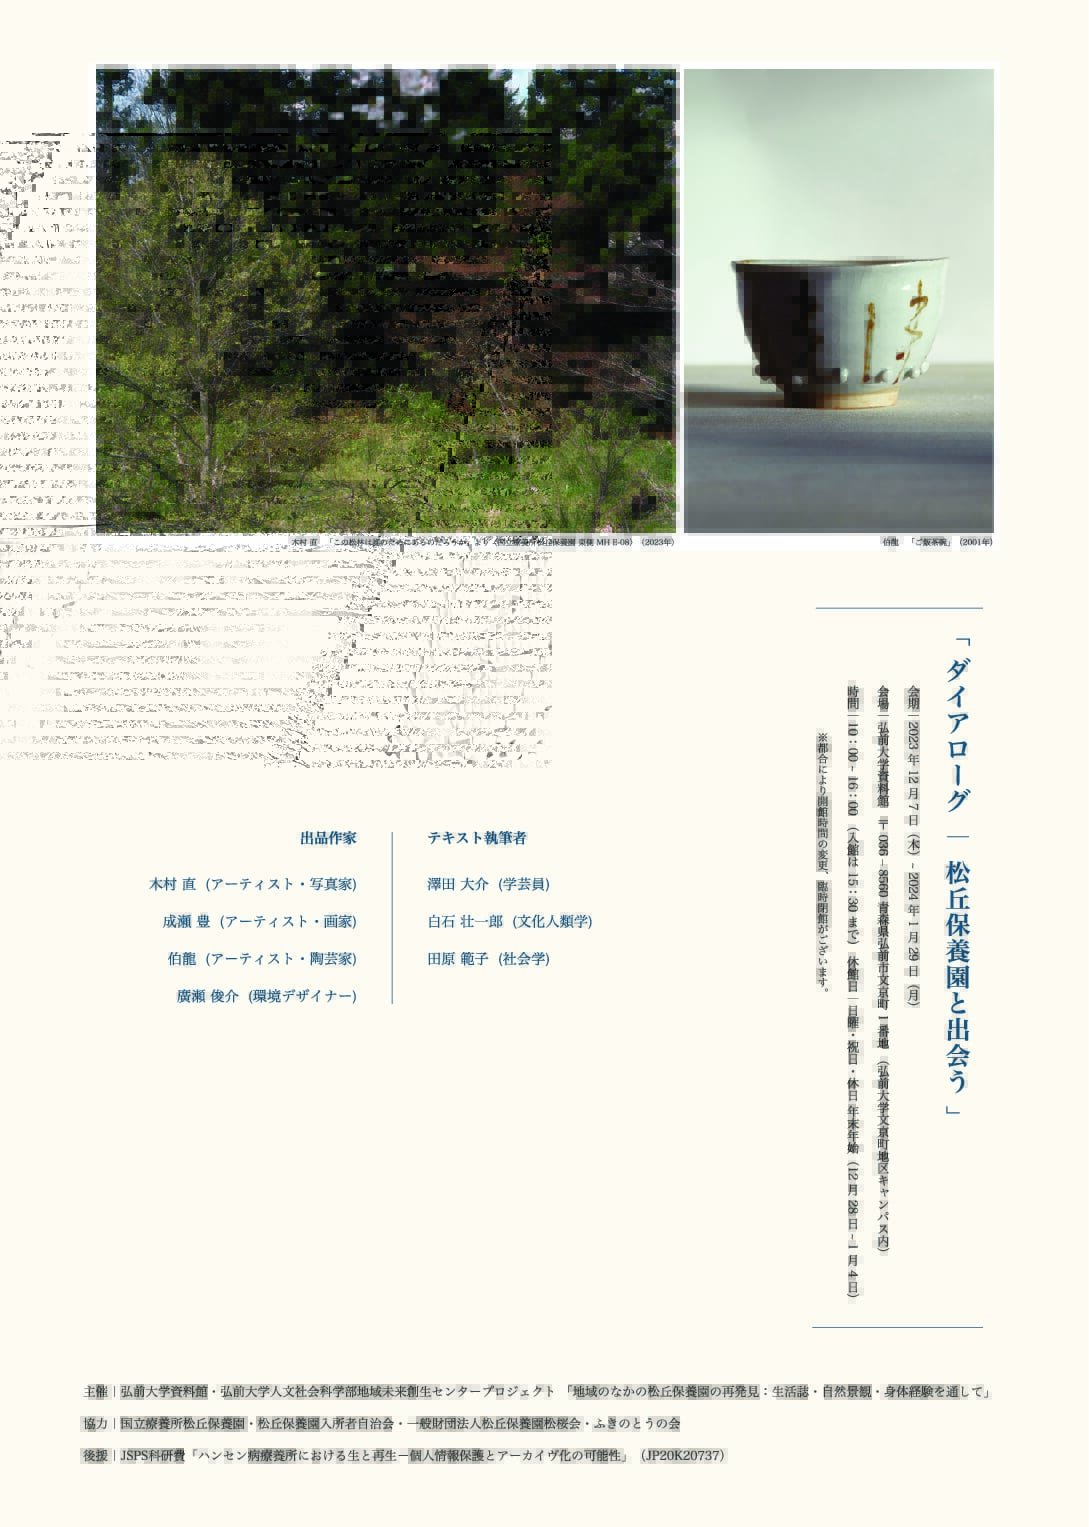 弘前大学資料館第３３回企画展「ダイアローグ –松丘保養園と出会う」を開催